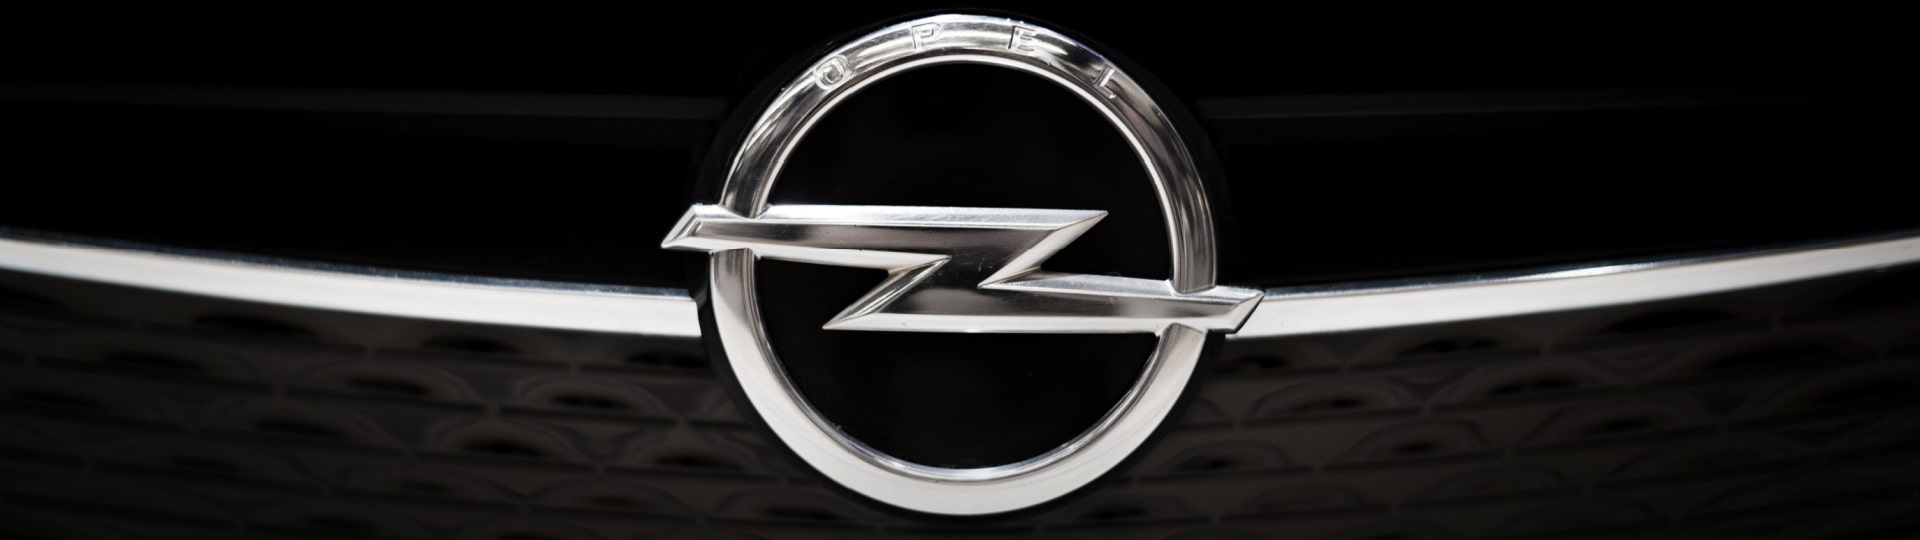 Automobilka Stellantis je optimistická ohledně značky Opel